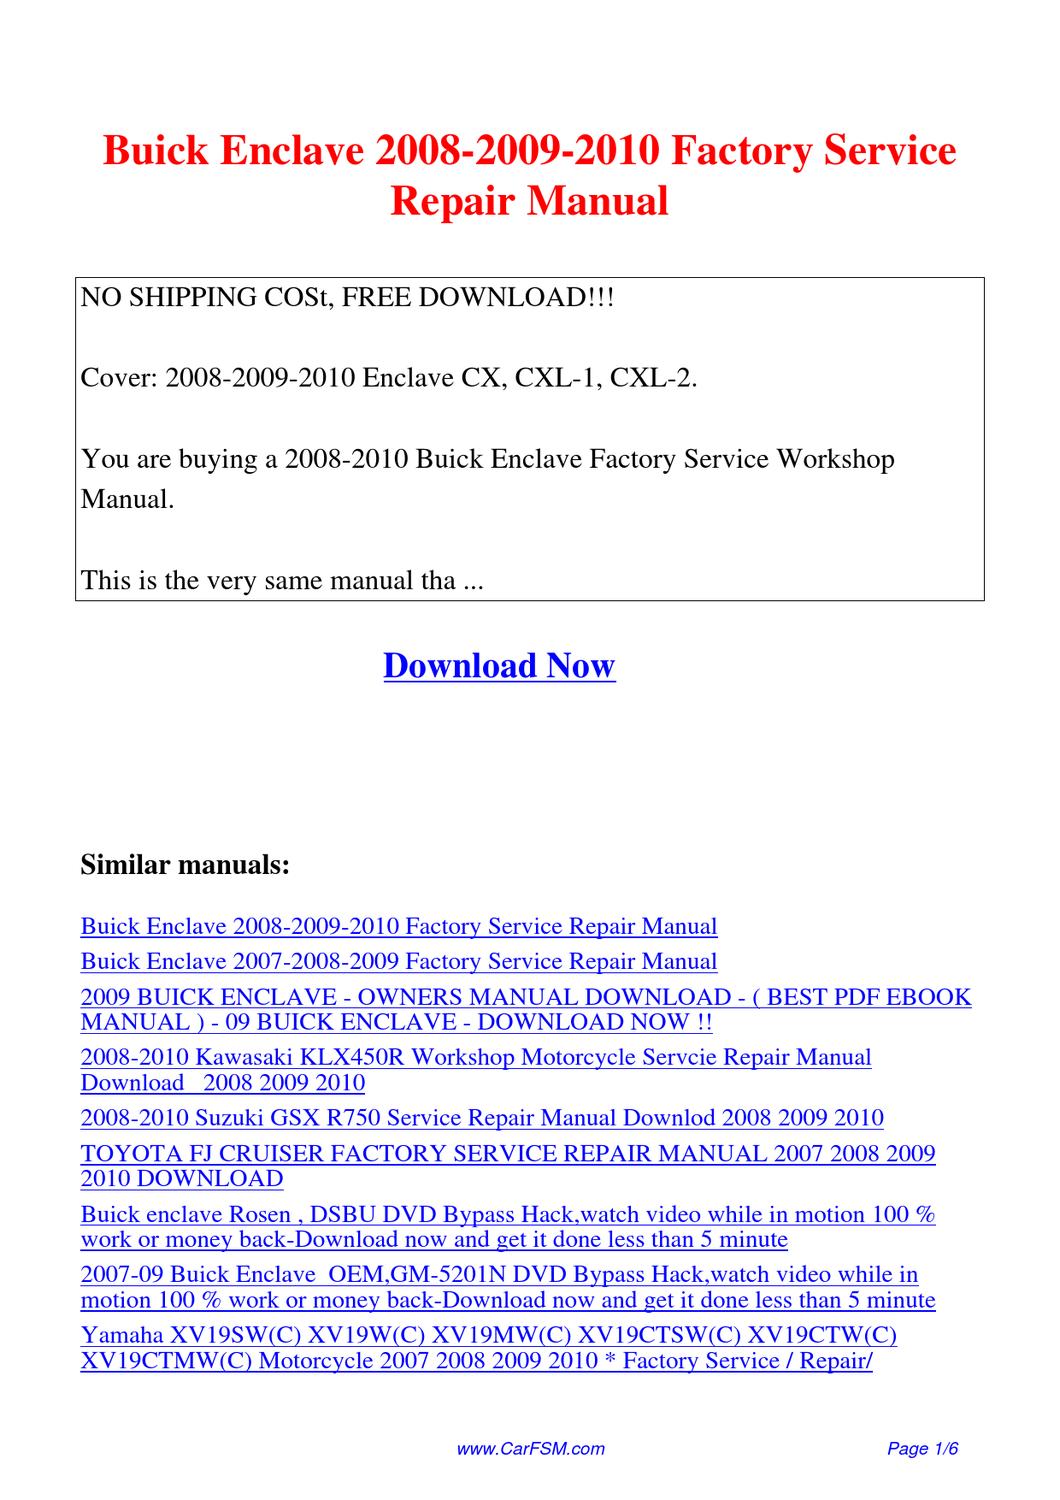 2009 buick enclave repair manual pdf